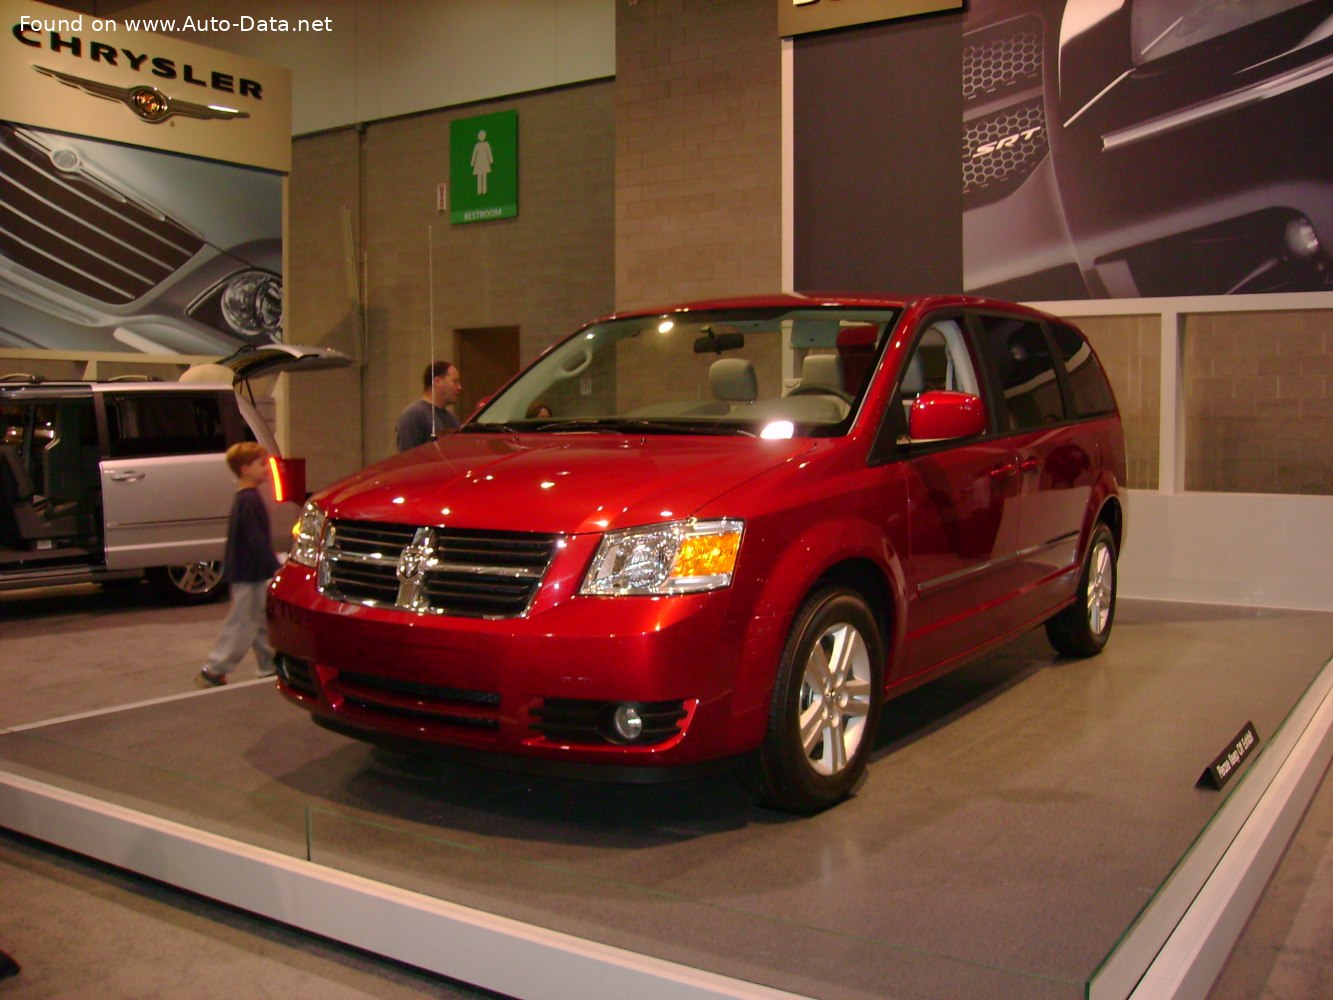 2008 Dodge Caravan V 4.0 V6 (257 Hp) Automatic | Technical specs, data,  fuel consumption, Dimensions